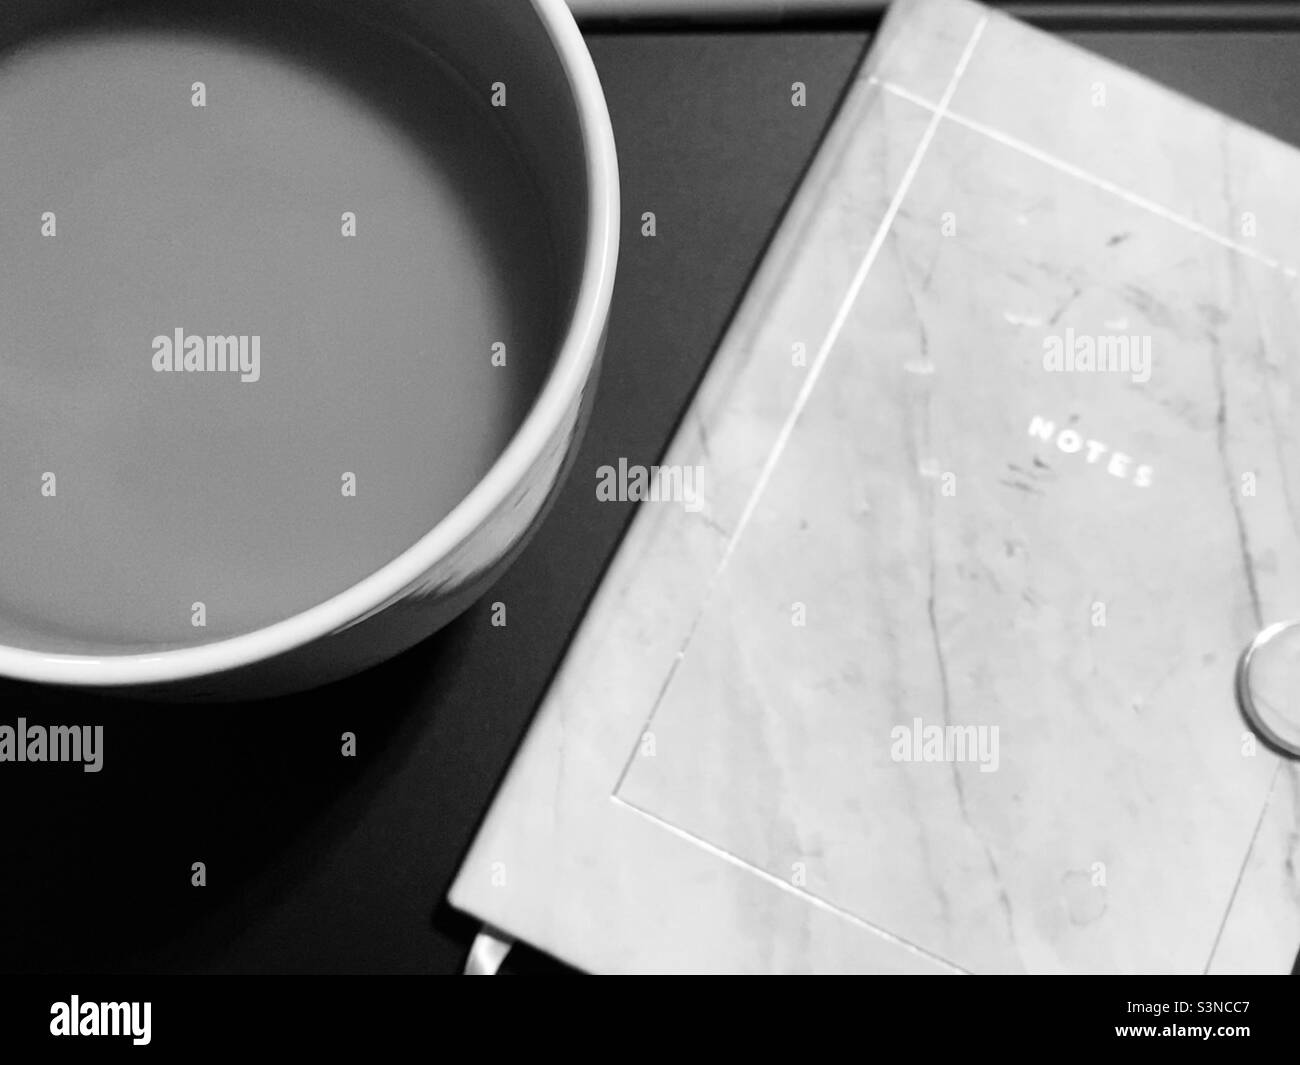 Geschlossenes Notizbuch mit der Aufschrift „Notizen“ und eine große Tasse Kaffee auf einem schwarzen Schreibtisch in Schwarz-Weiß, um sich auf Treffen, Arbeit von zu Hause, virtuelle Schule vorzubereiten Stockfoto